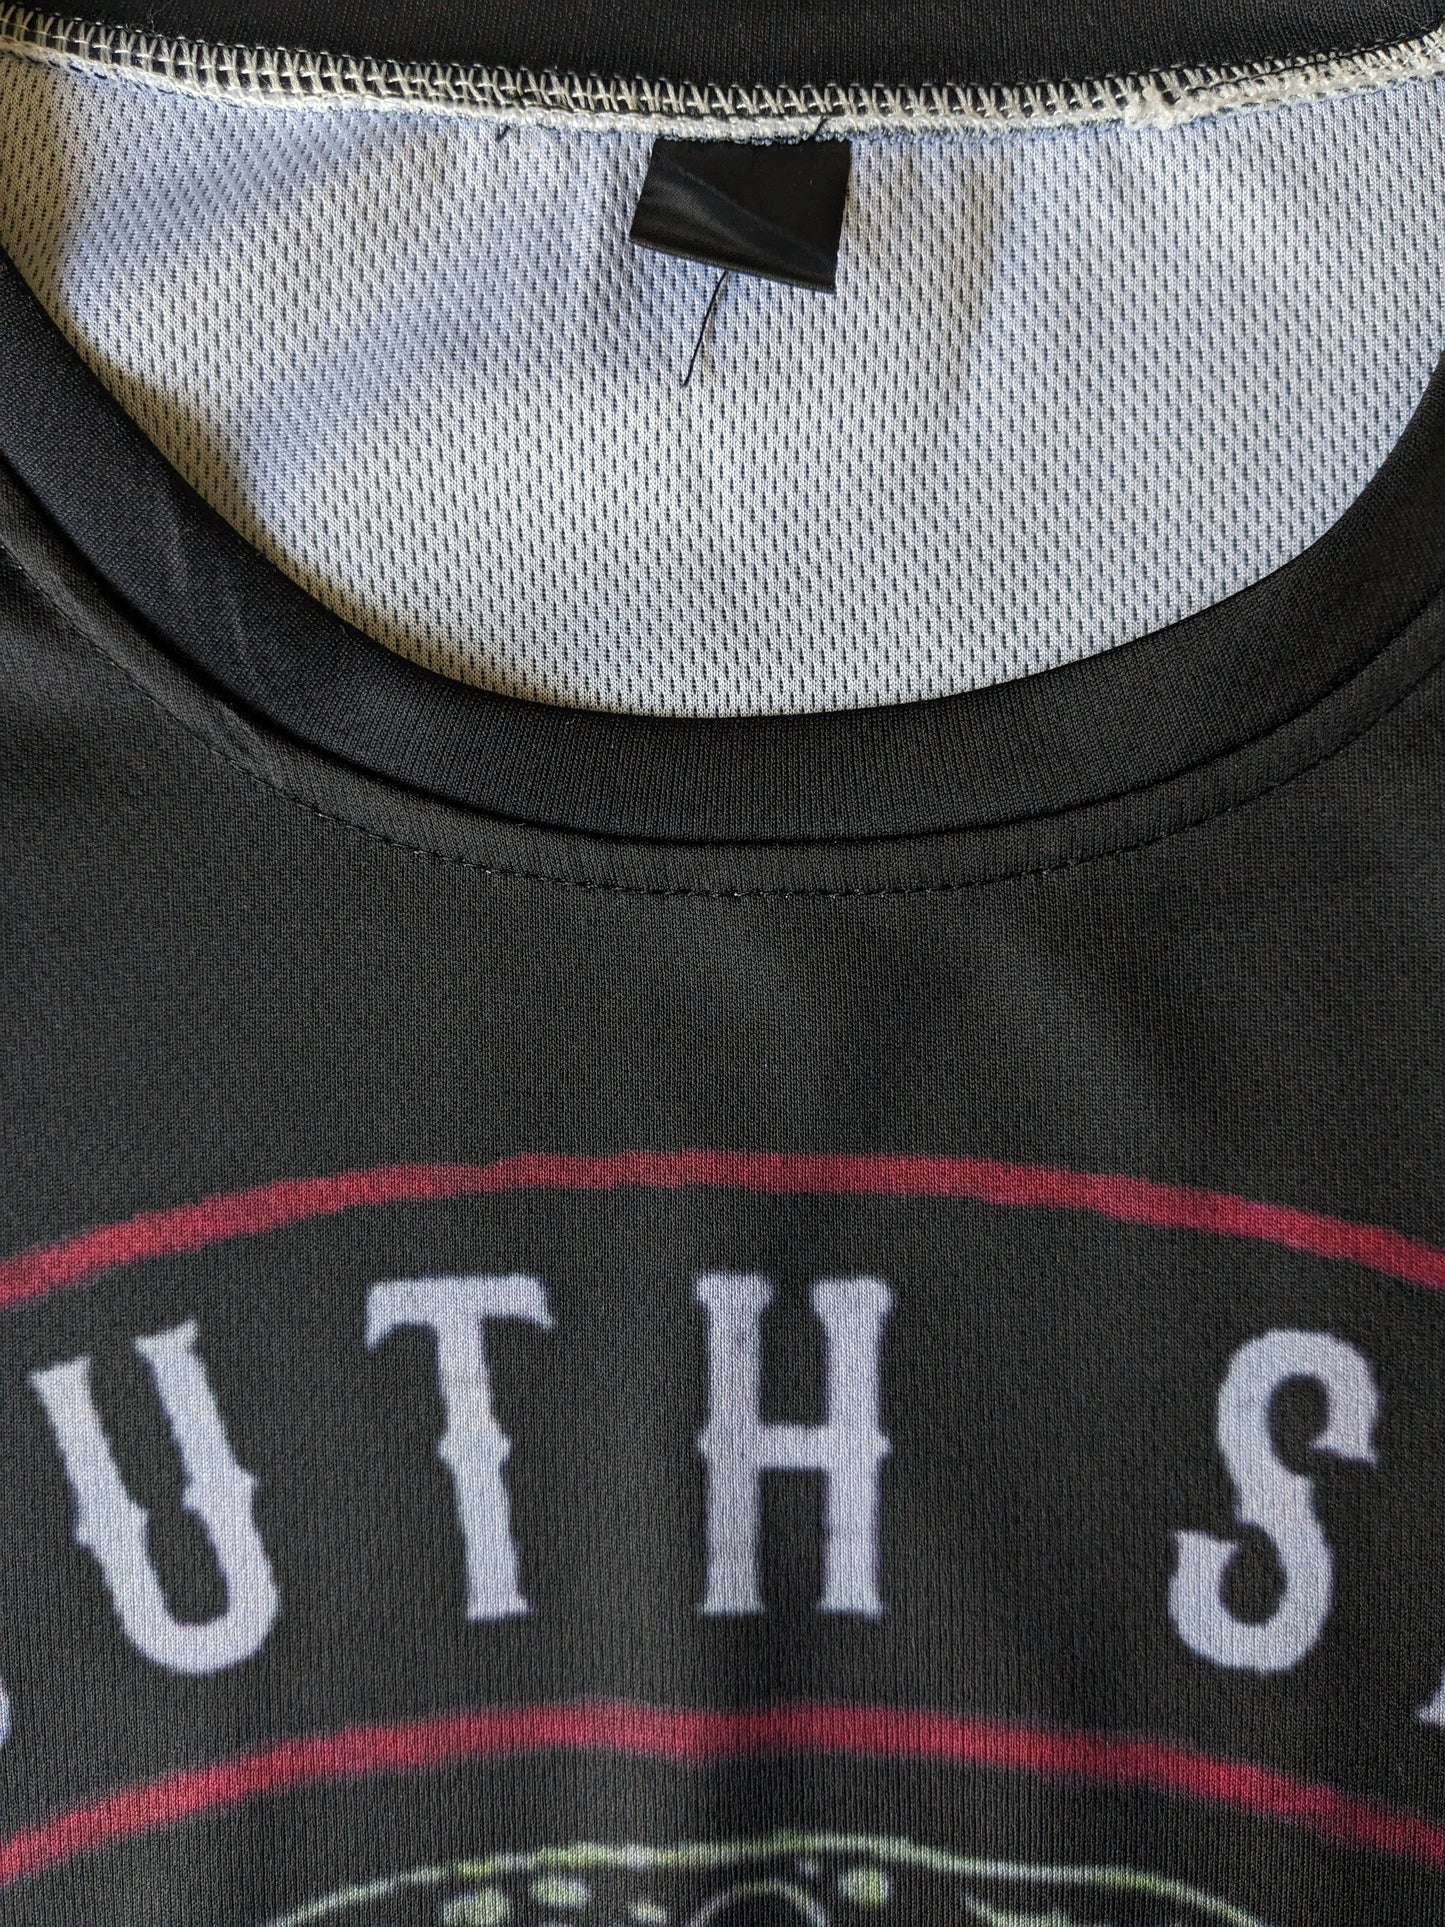 South Side Serpents shirt. Zwart met opdruk. Maat M. stretch